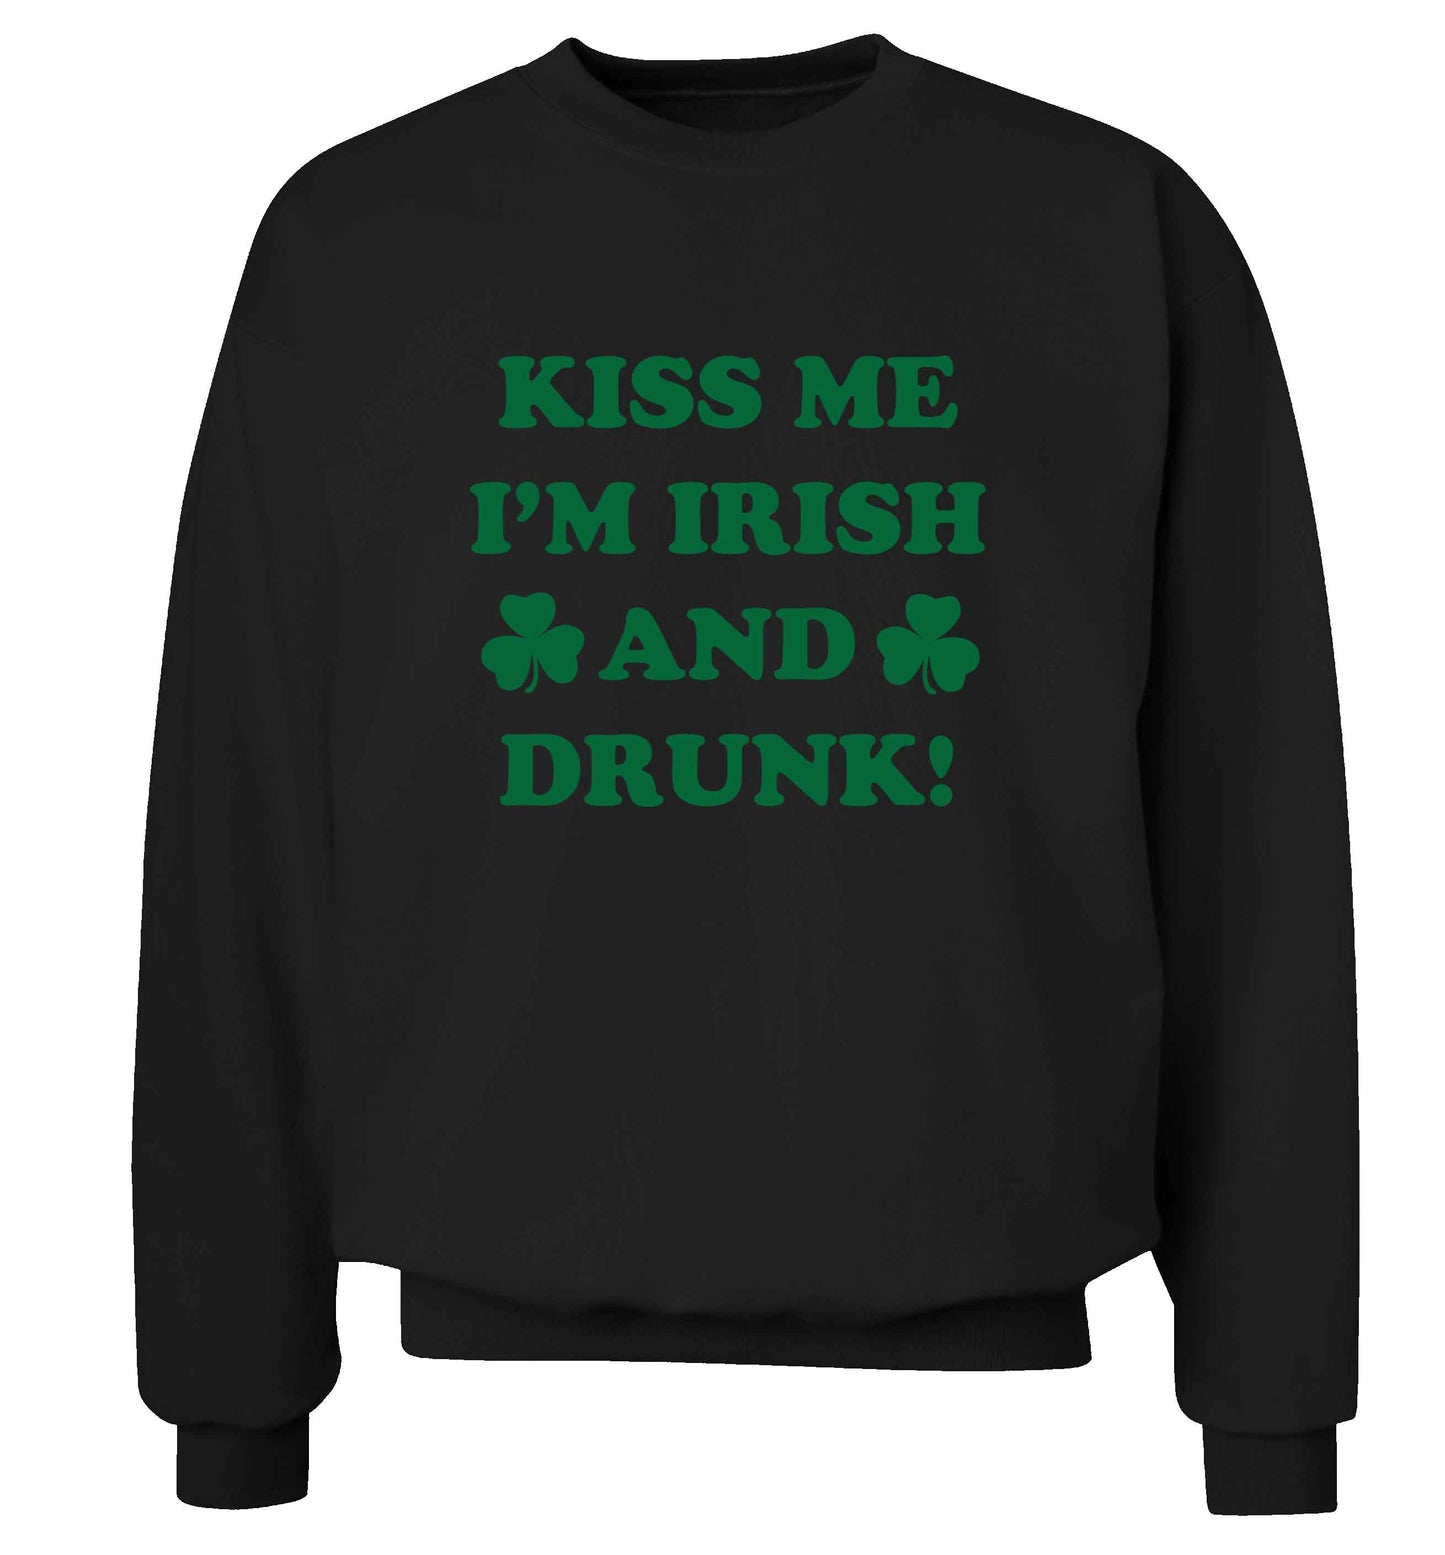 Kiss me I'm Irish and drunk adult's unisex black sweater 2XL